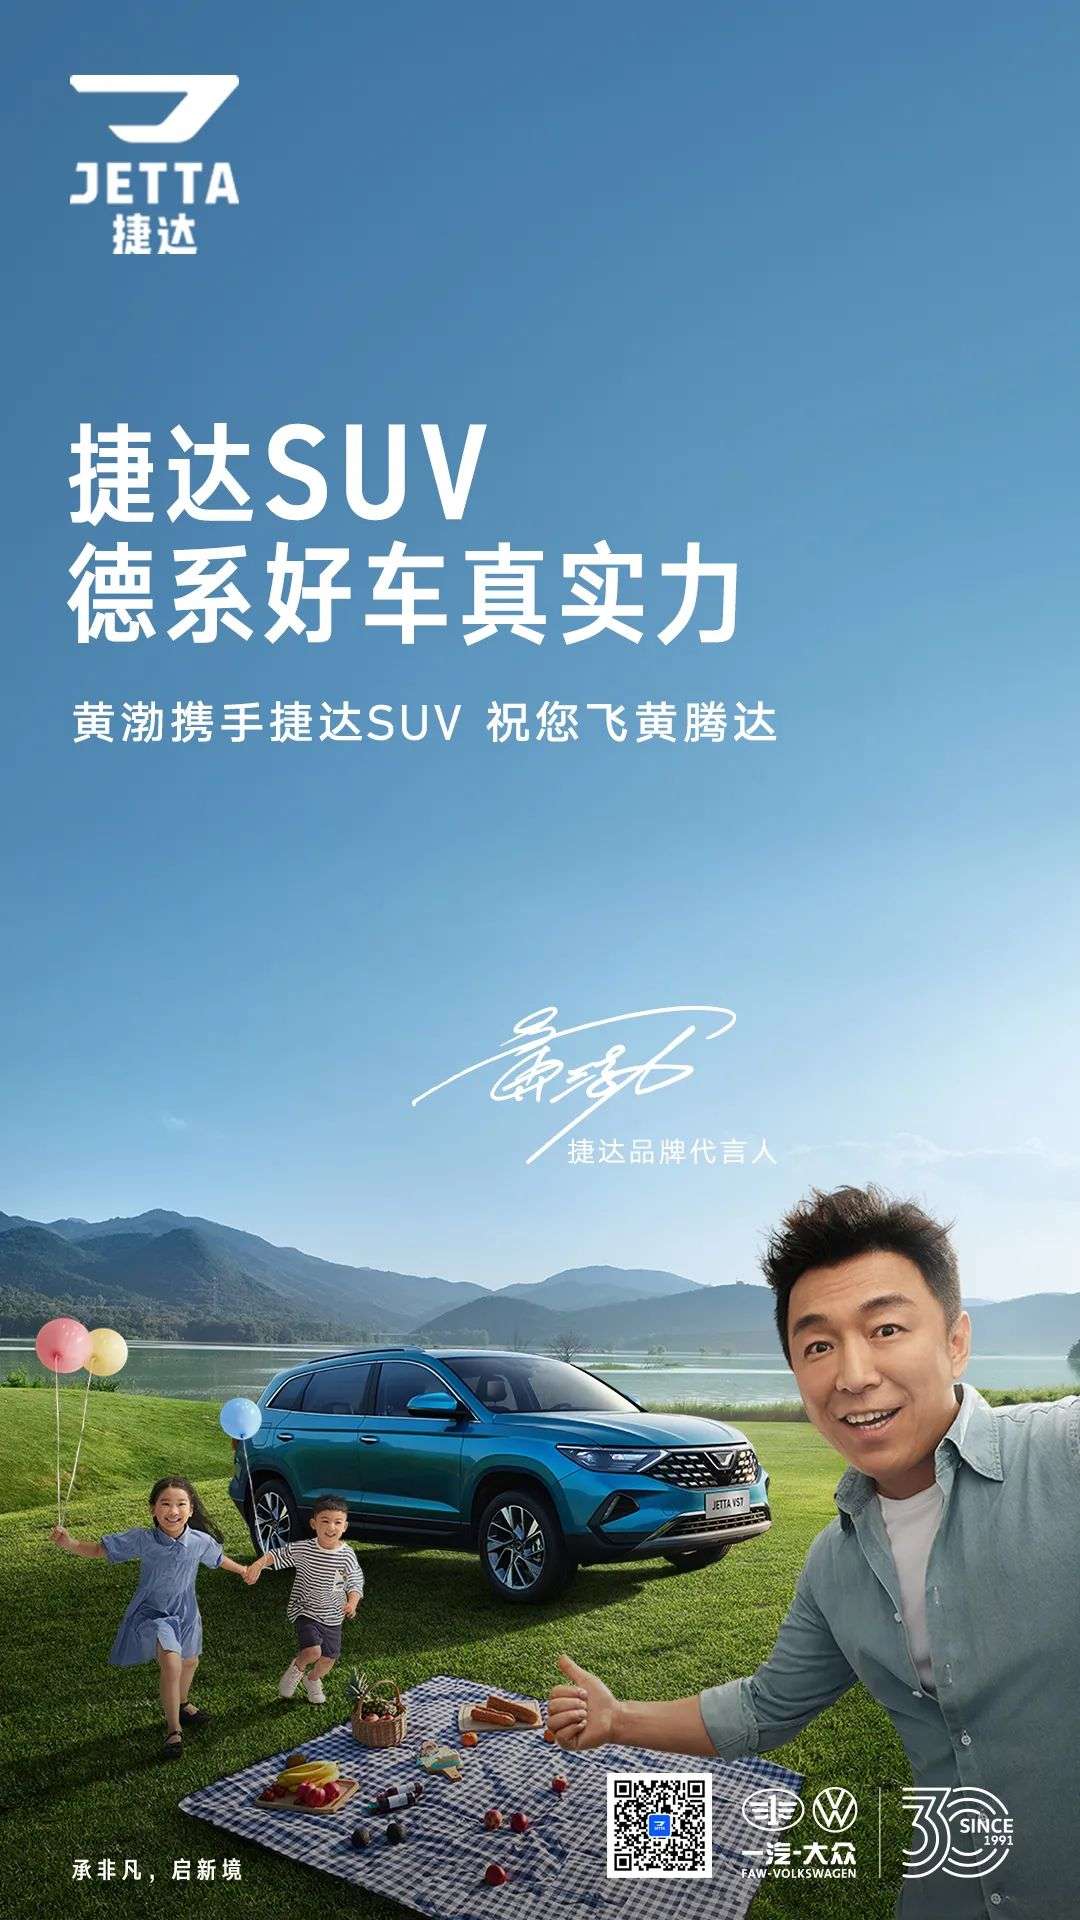 郑州捷达VS7让利促销， 降价0.5万元, 欢迎垂询